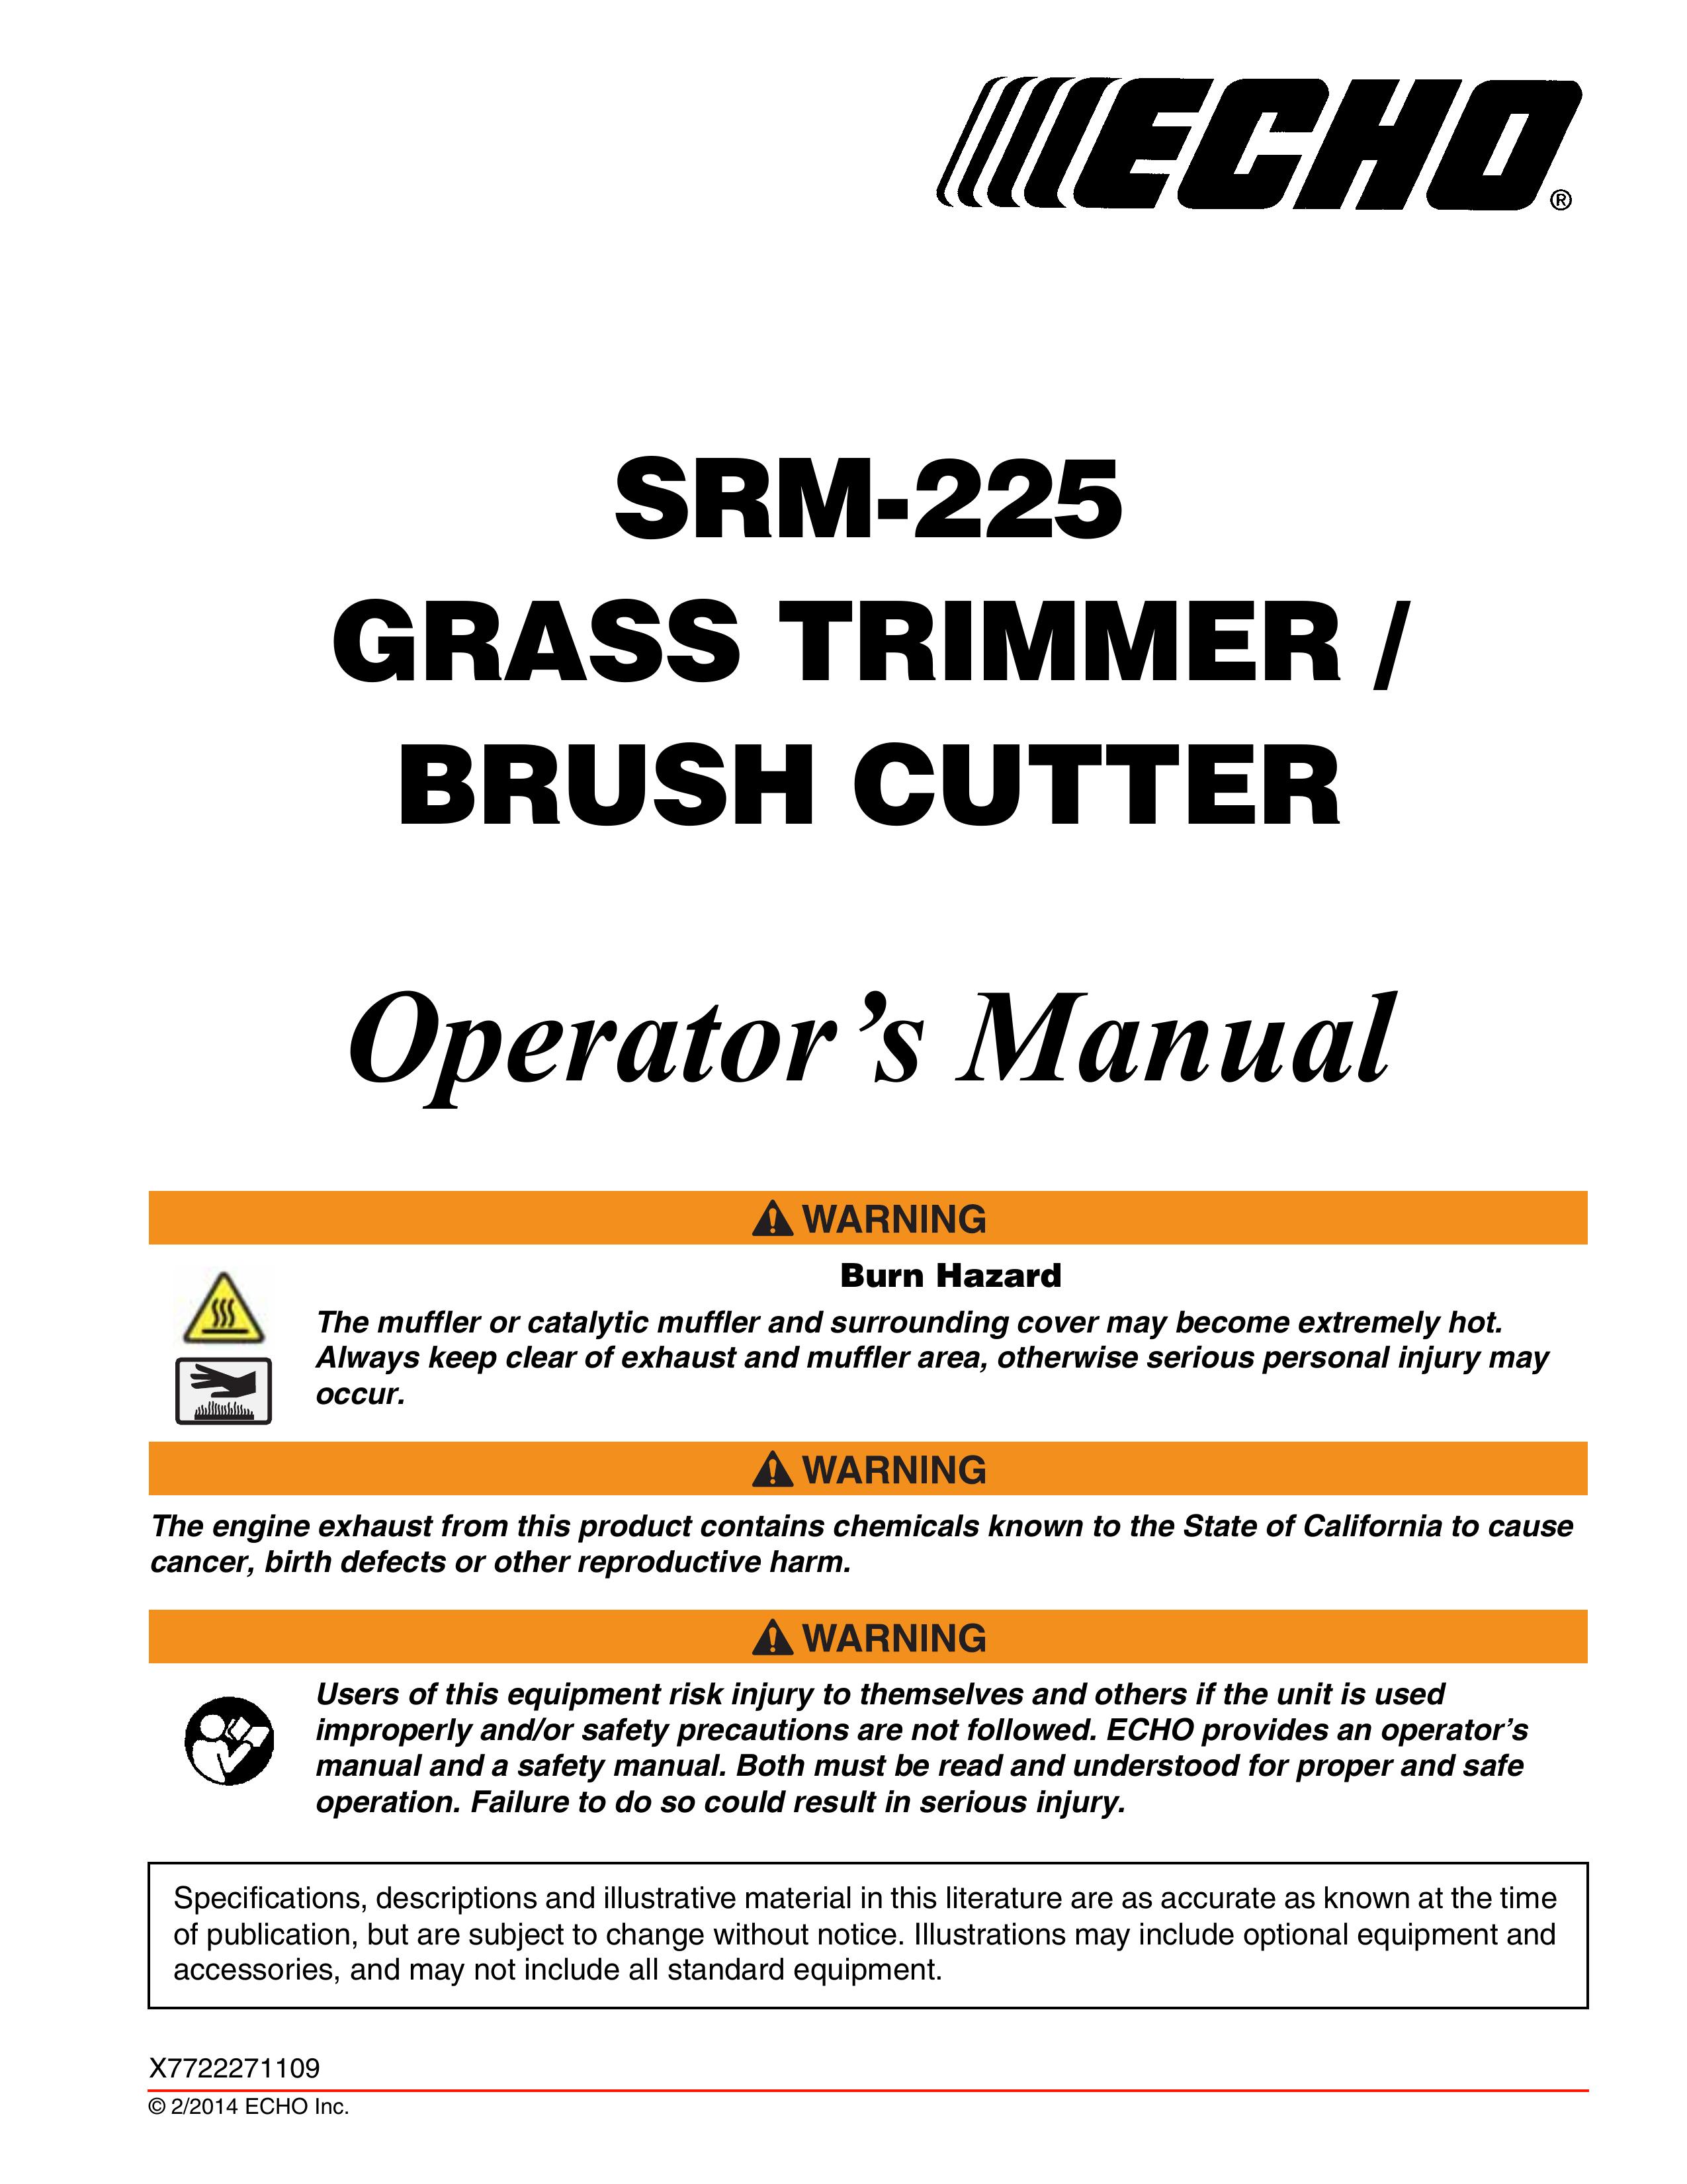 Echo SRM-225 Brush Cutter User Manual